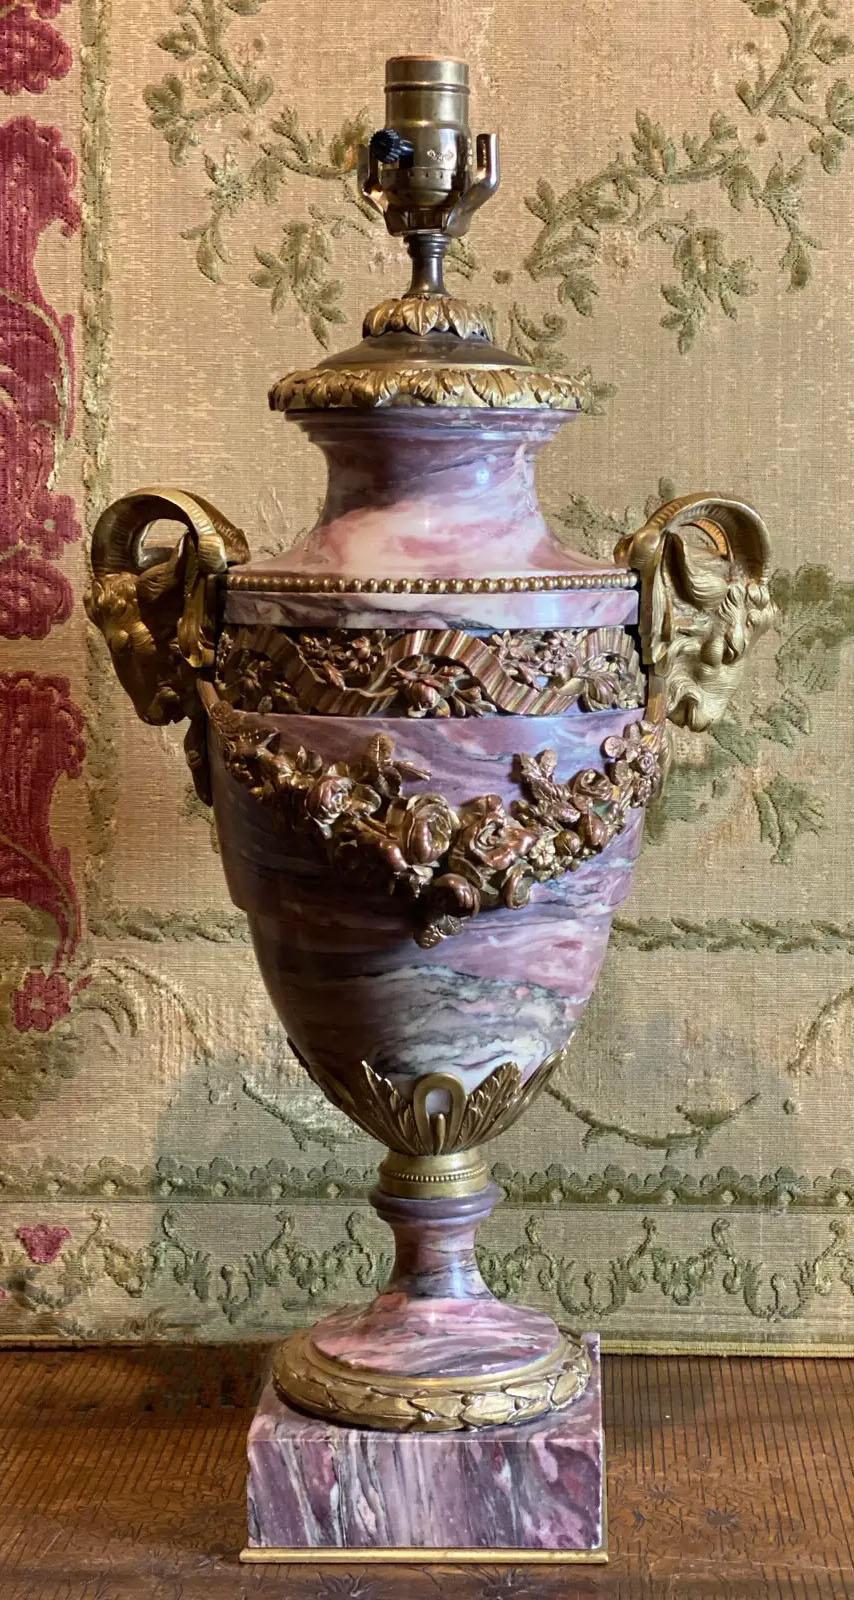 Lampe urne française avec tête de bélier dorée et marbre brèche violette. Vers 1870.